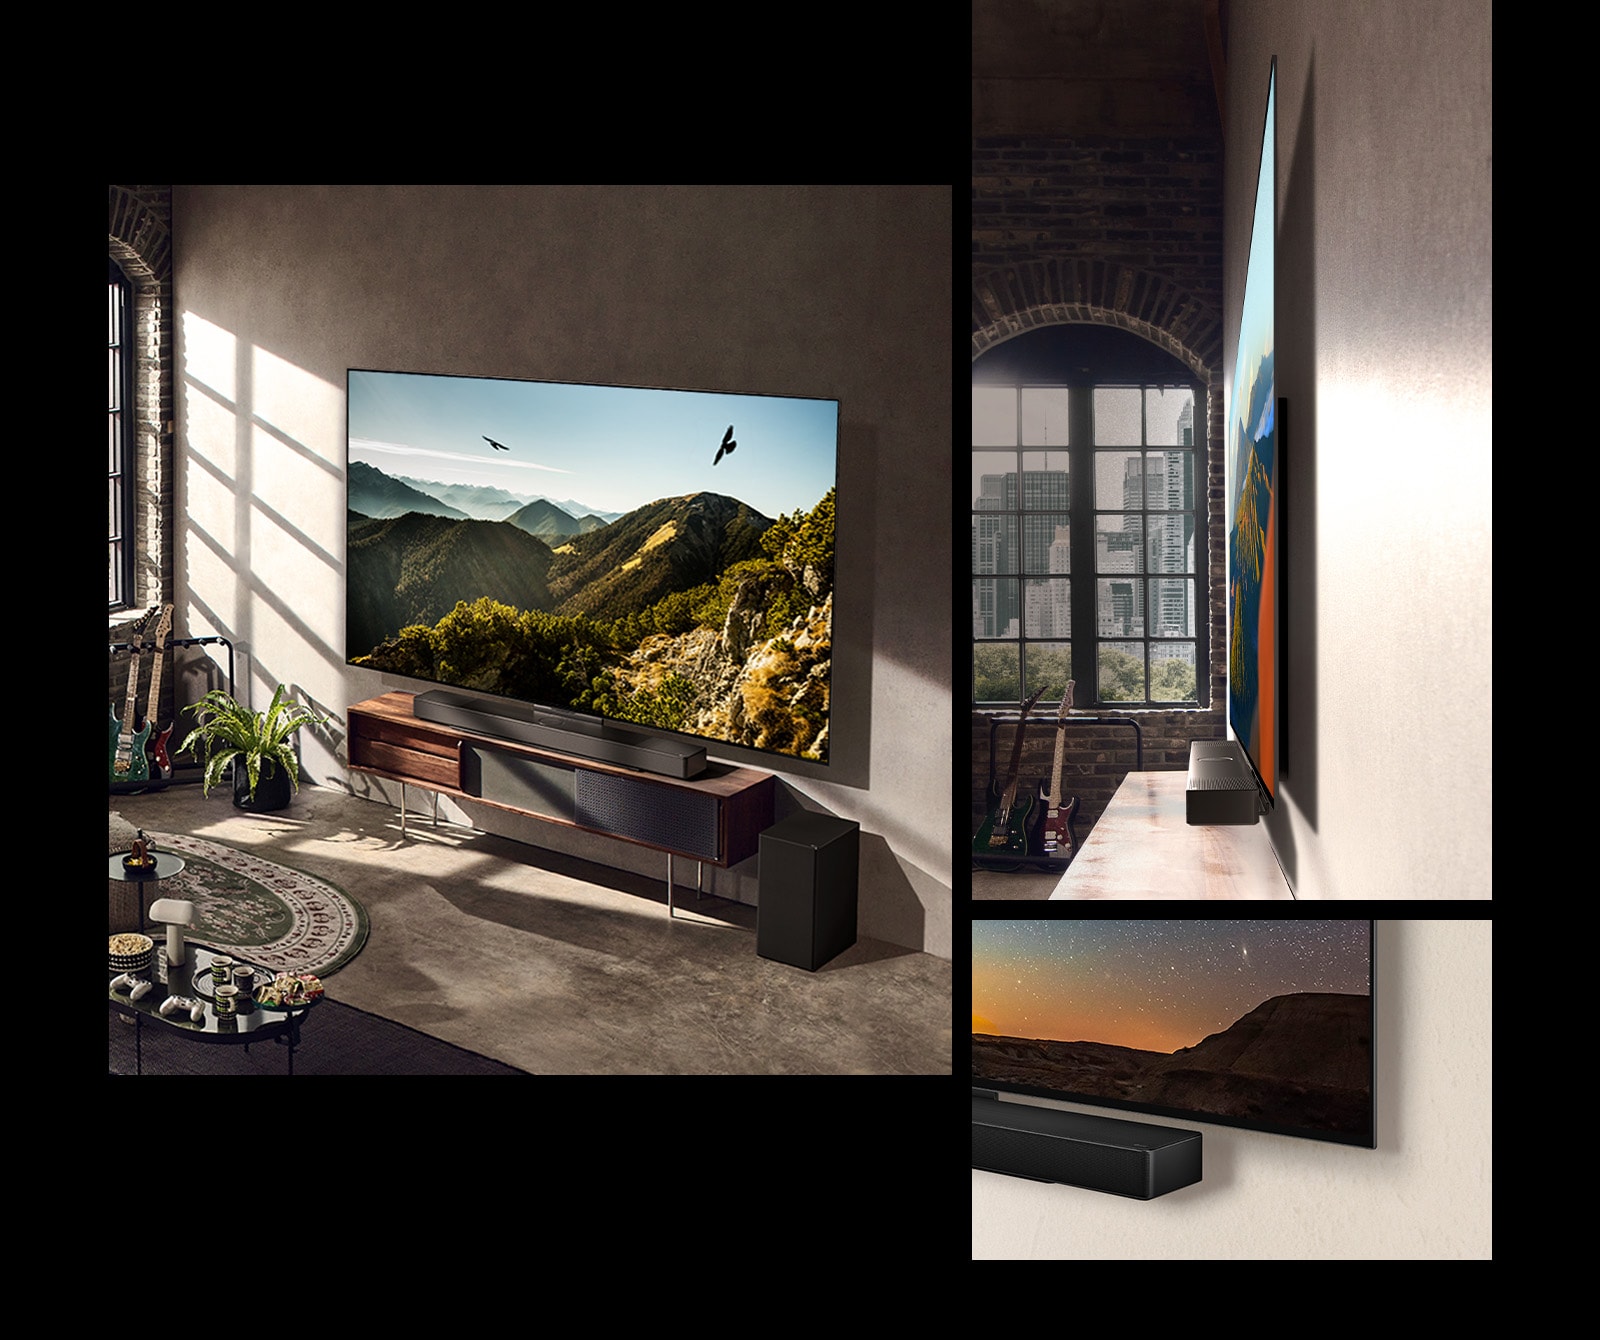 Slika televizora LG OLED C3 sa zvučnikom Soundbar na zidu u umjetničkoj sobi. Prikaz bočne strane tankih dimenzija televizora LG OLED C3 ispred prozora s pogledom na grad. Donji kut televizora LG OLED C3 i Soundbara.